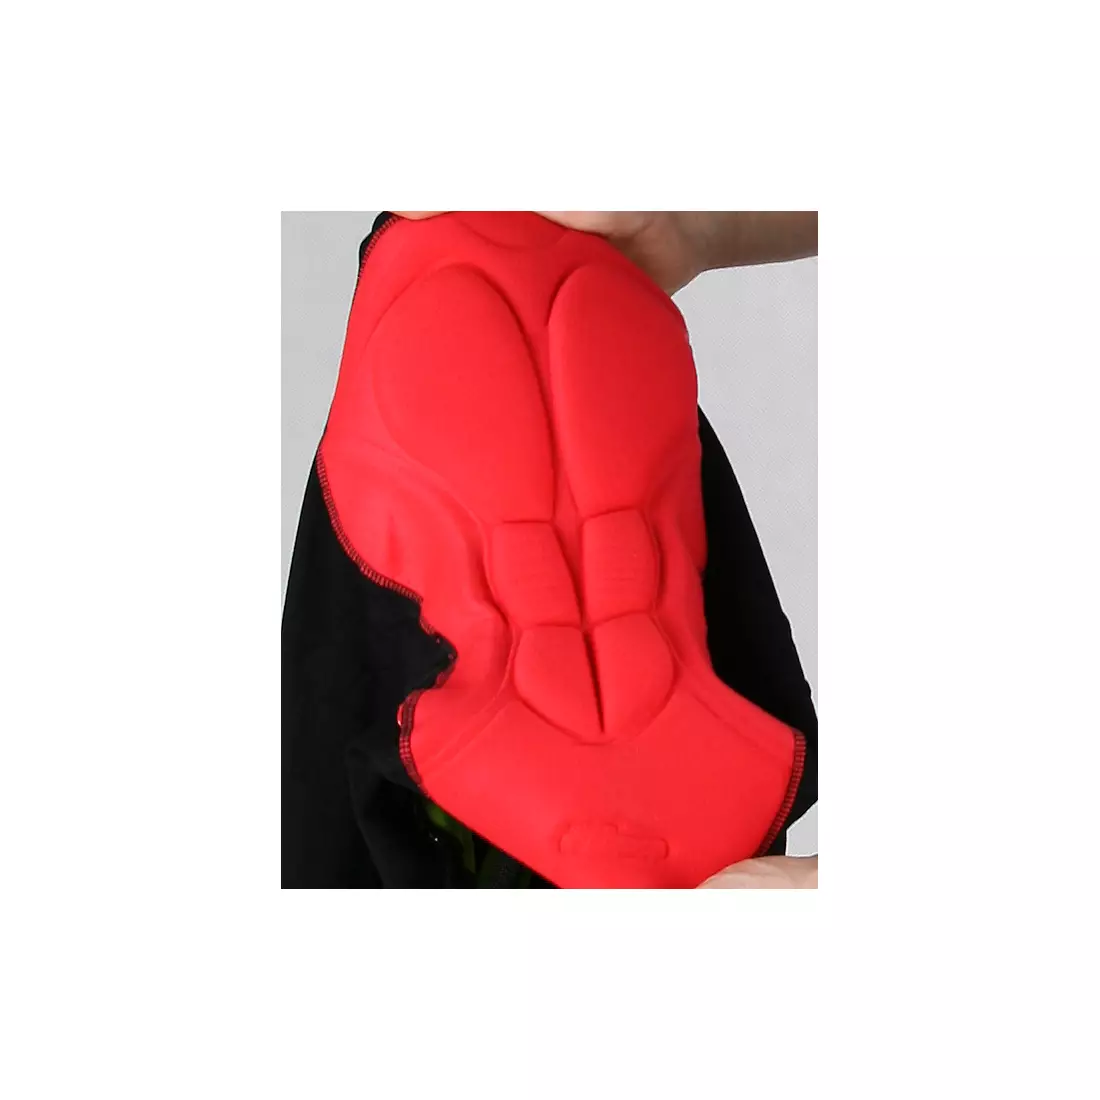 ROGELLI PORCARI - pánske šortky s náprsenkou, farba: čierna a červená